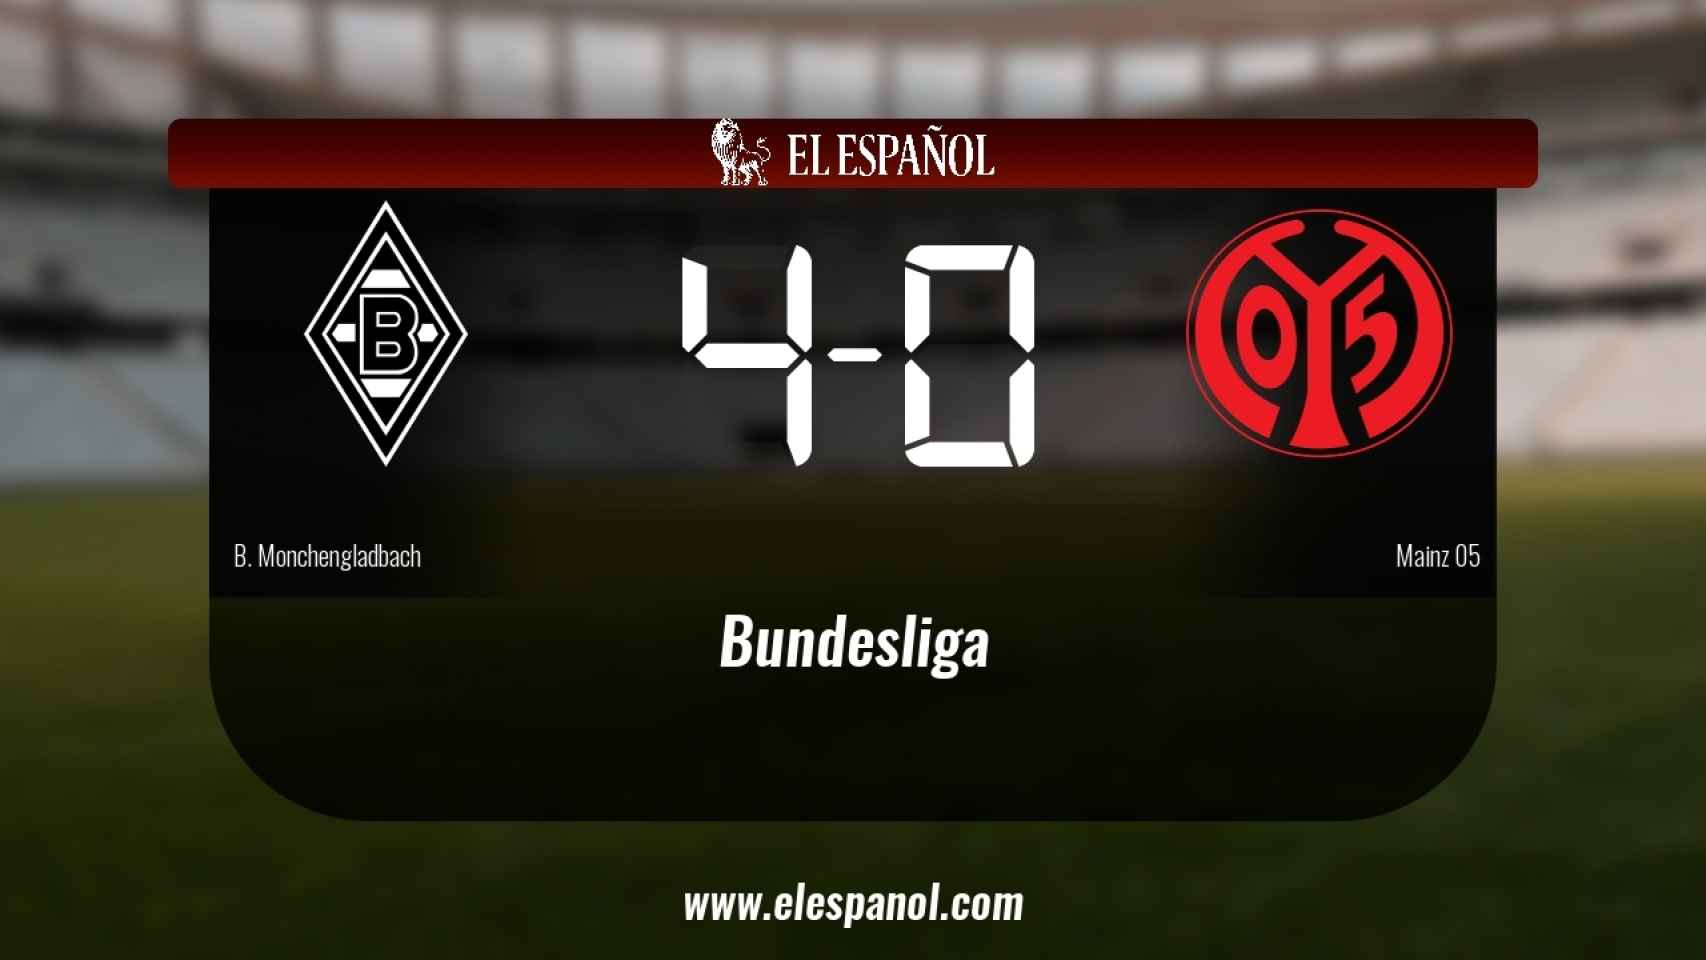 Victoria 4-0 del Borussia Monchengladbach frente al Mainz 05